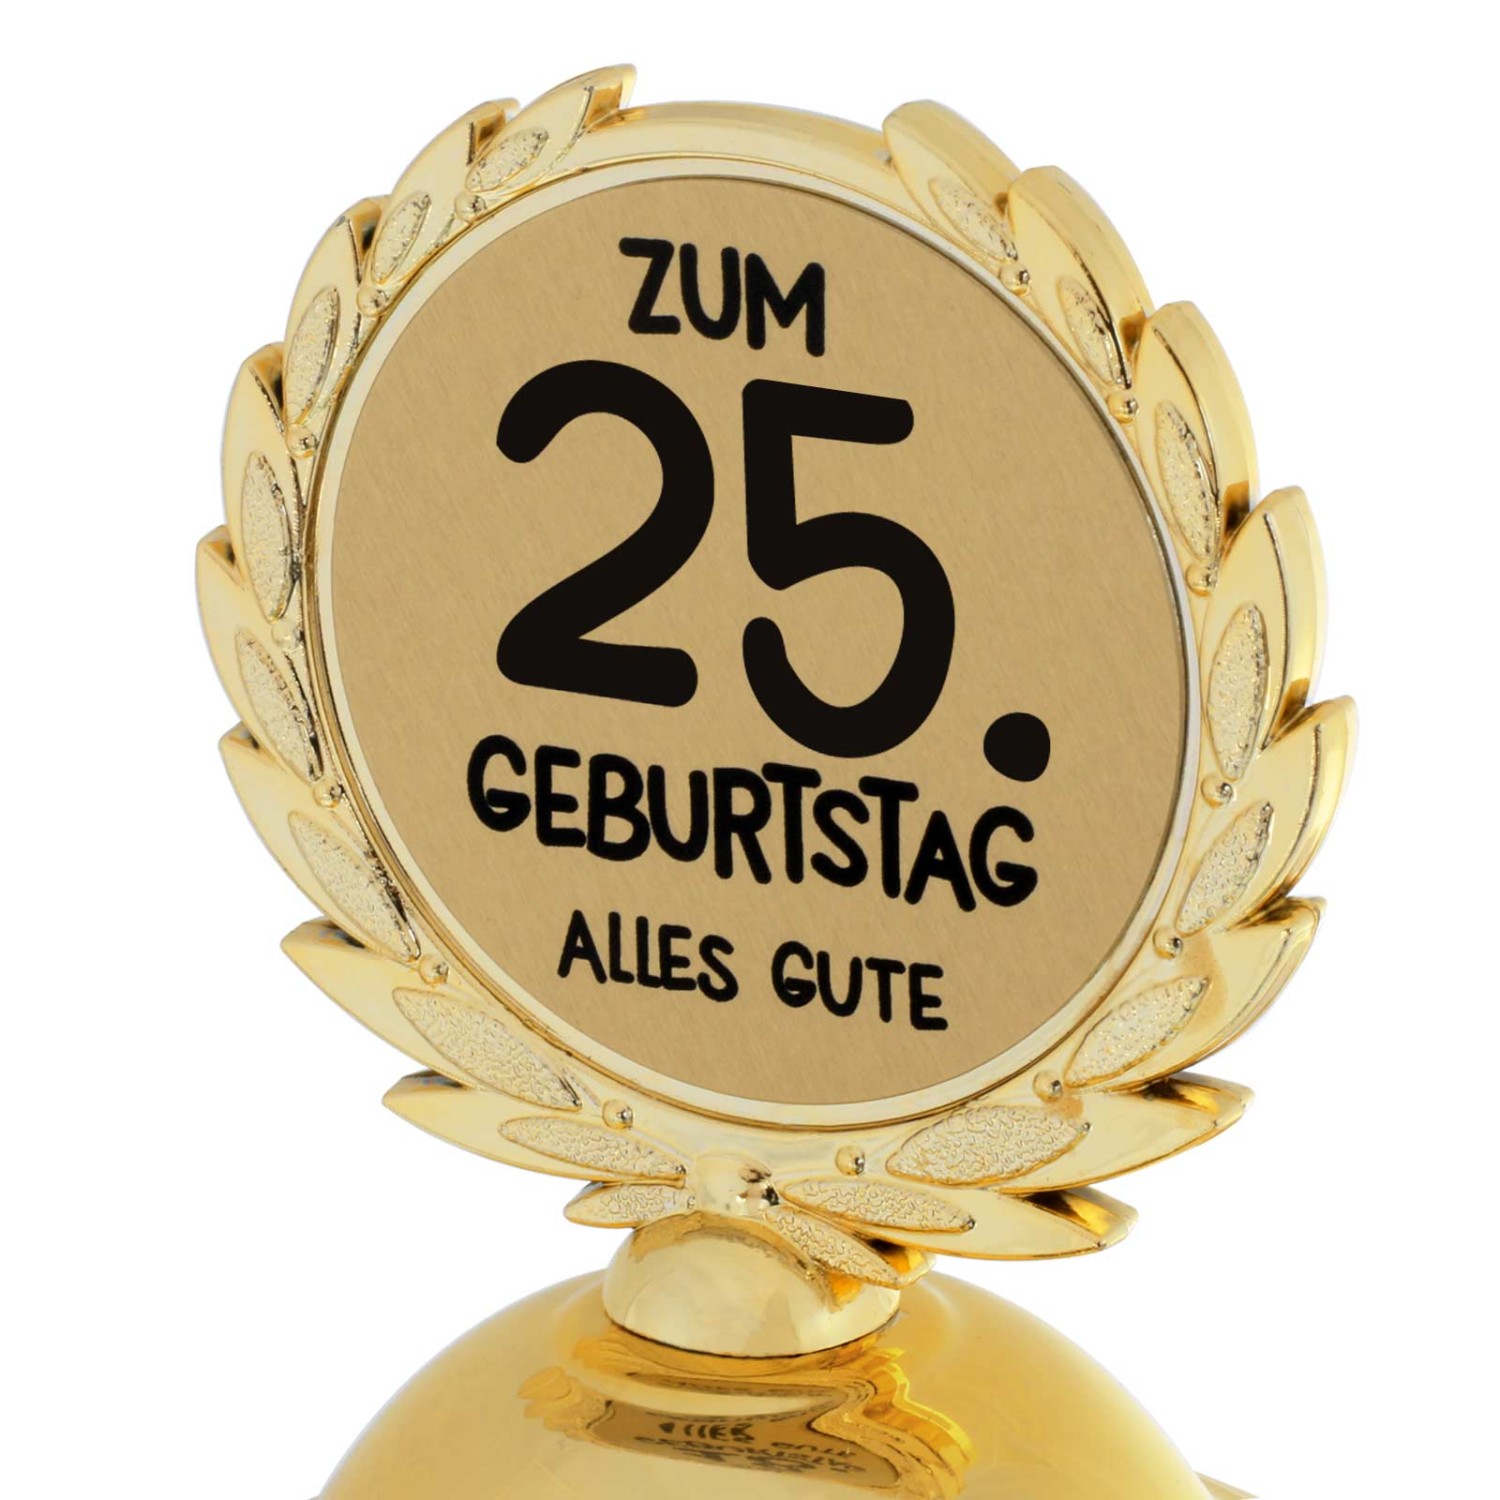 1. Foto Pokal 25. Geburtstag Geschenk 31cm groß (Jahreszahl Geburtstag: 25)